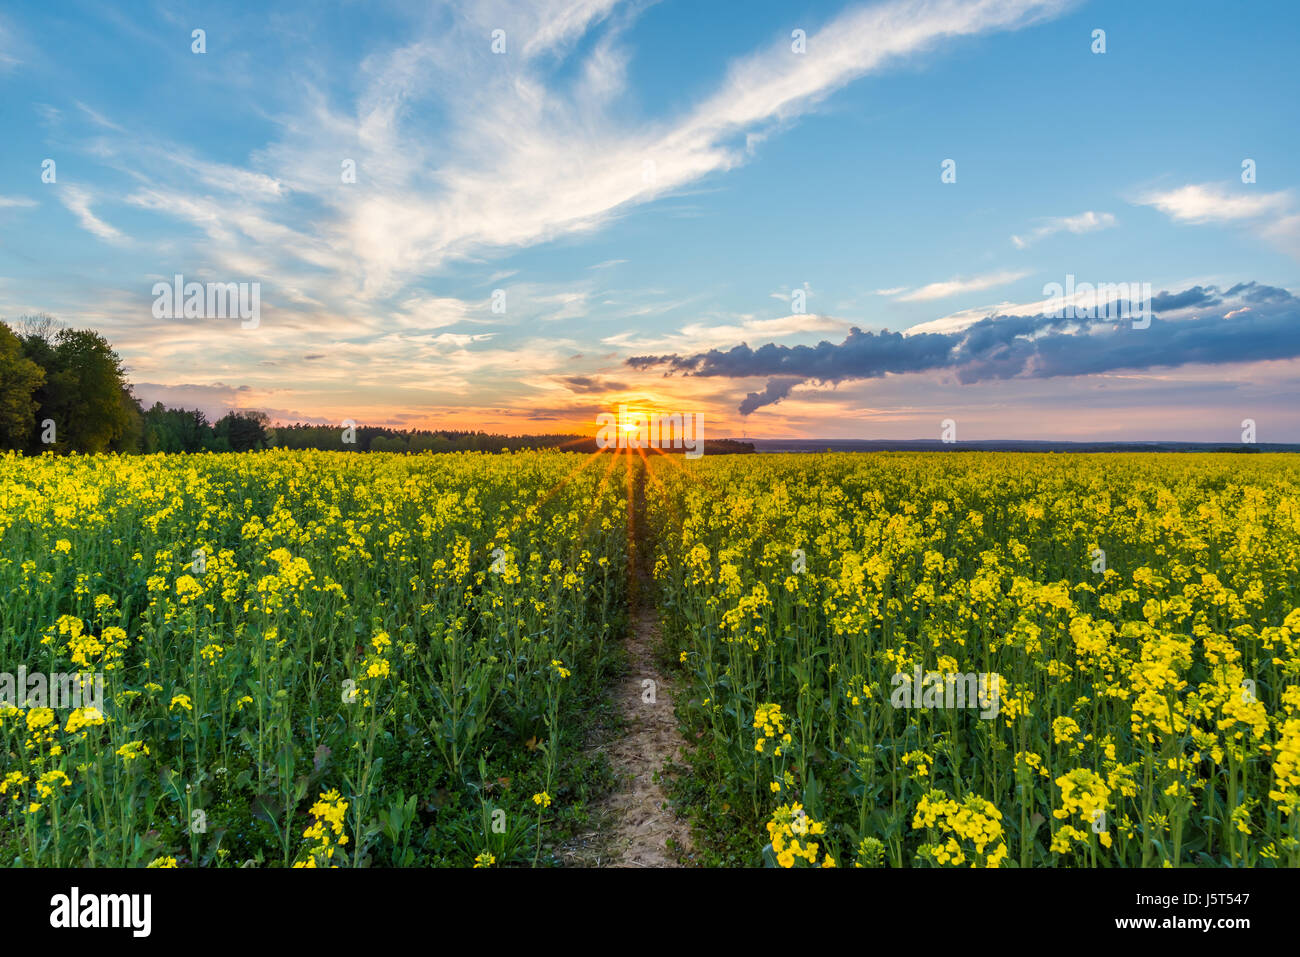 Horizontale Frühling Landschaftsfoto. Raps-Feld mit gelben Blüten und Pfad im Zentrum. Sonnenuntergang mit orange Sonnenstrahlen im Hintergrund. Schöne blaue Himmel Stockfoto